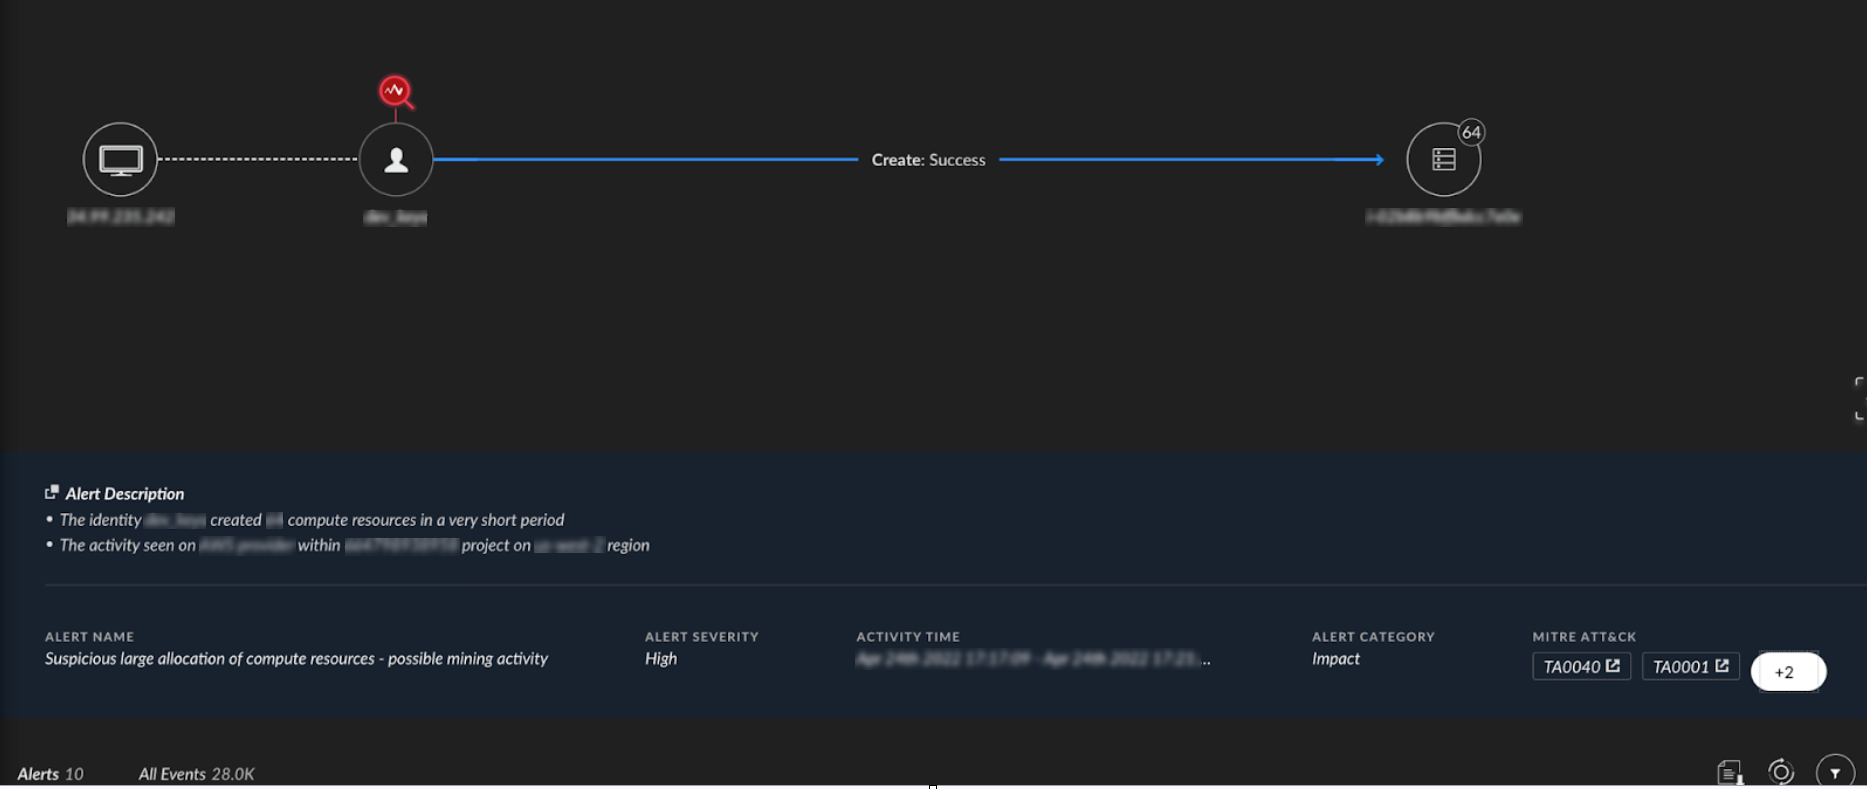 図2は侵害したApp Engineサービスのアカウントで攻撃者がマイニング用の複数のクラウドインスタンスを探している様子を表したスクリーンショット。